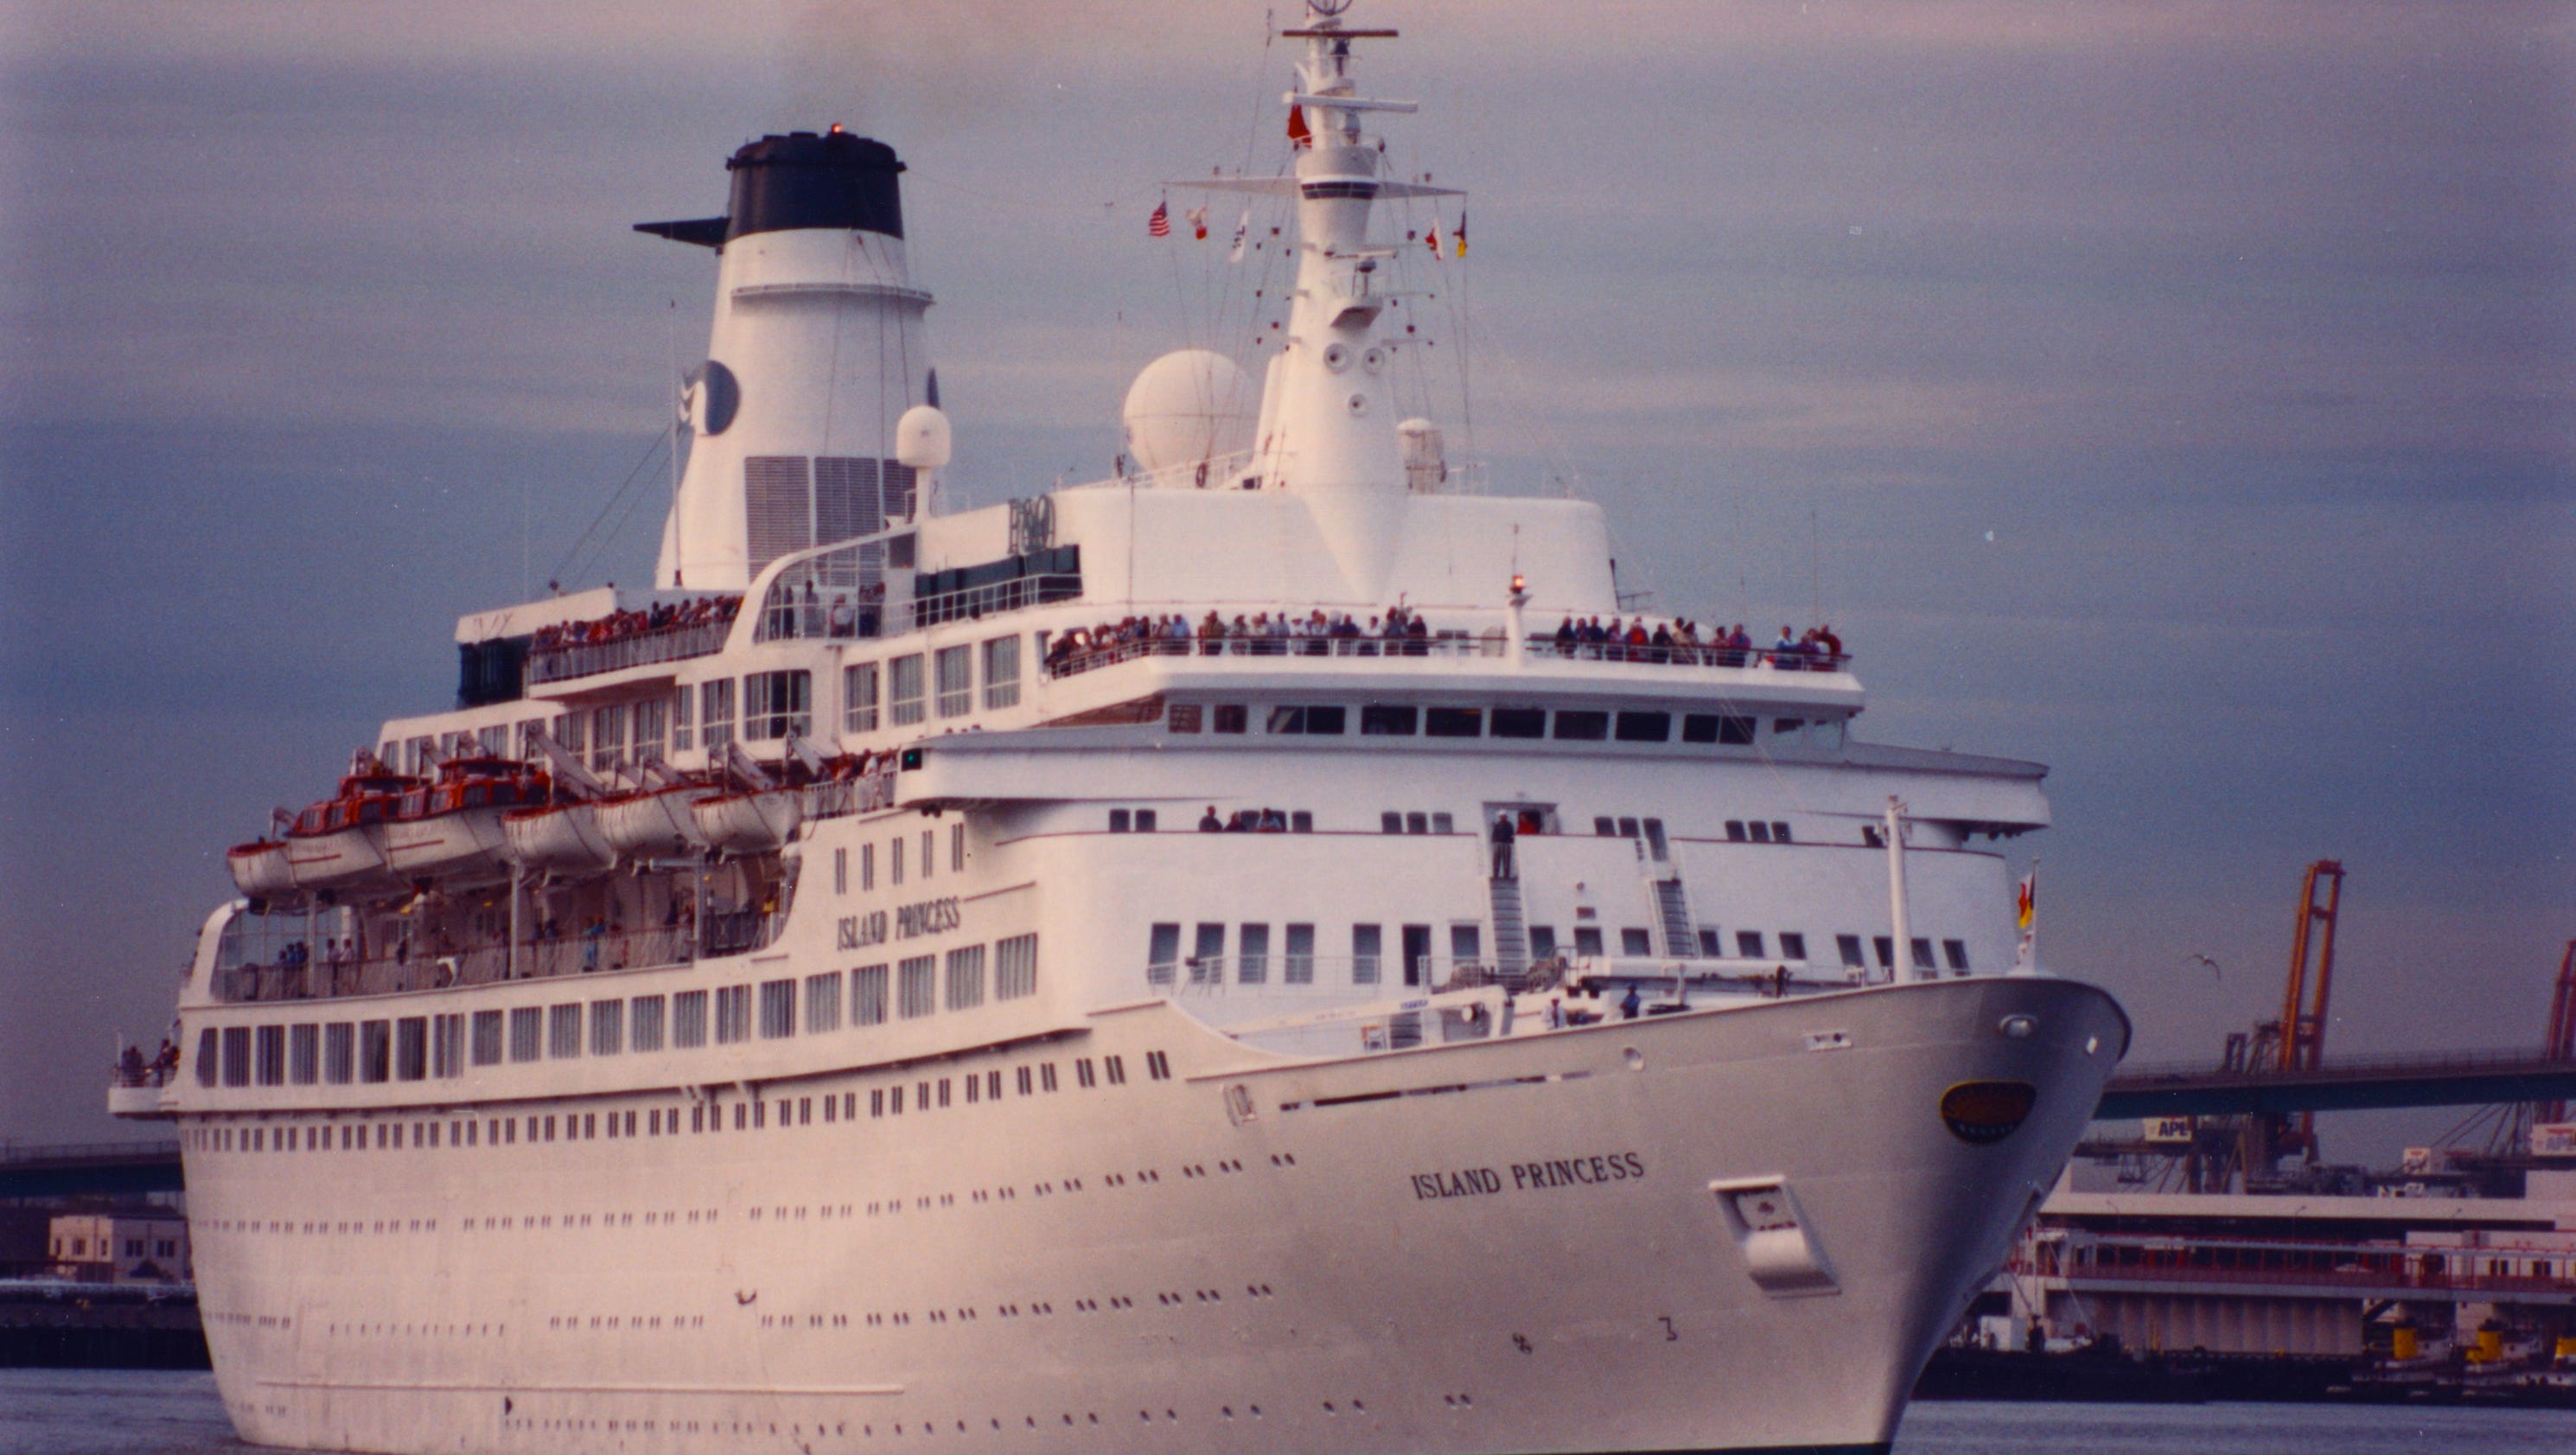 royal princess cruise ship history